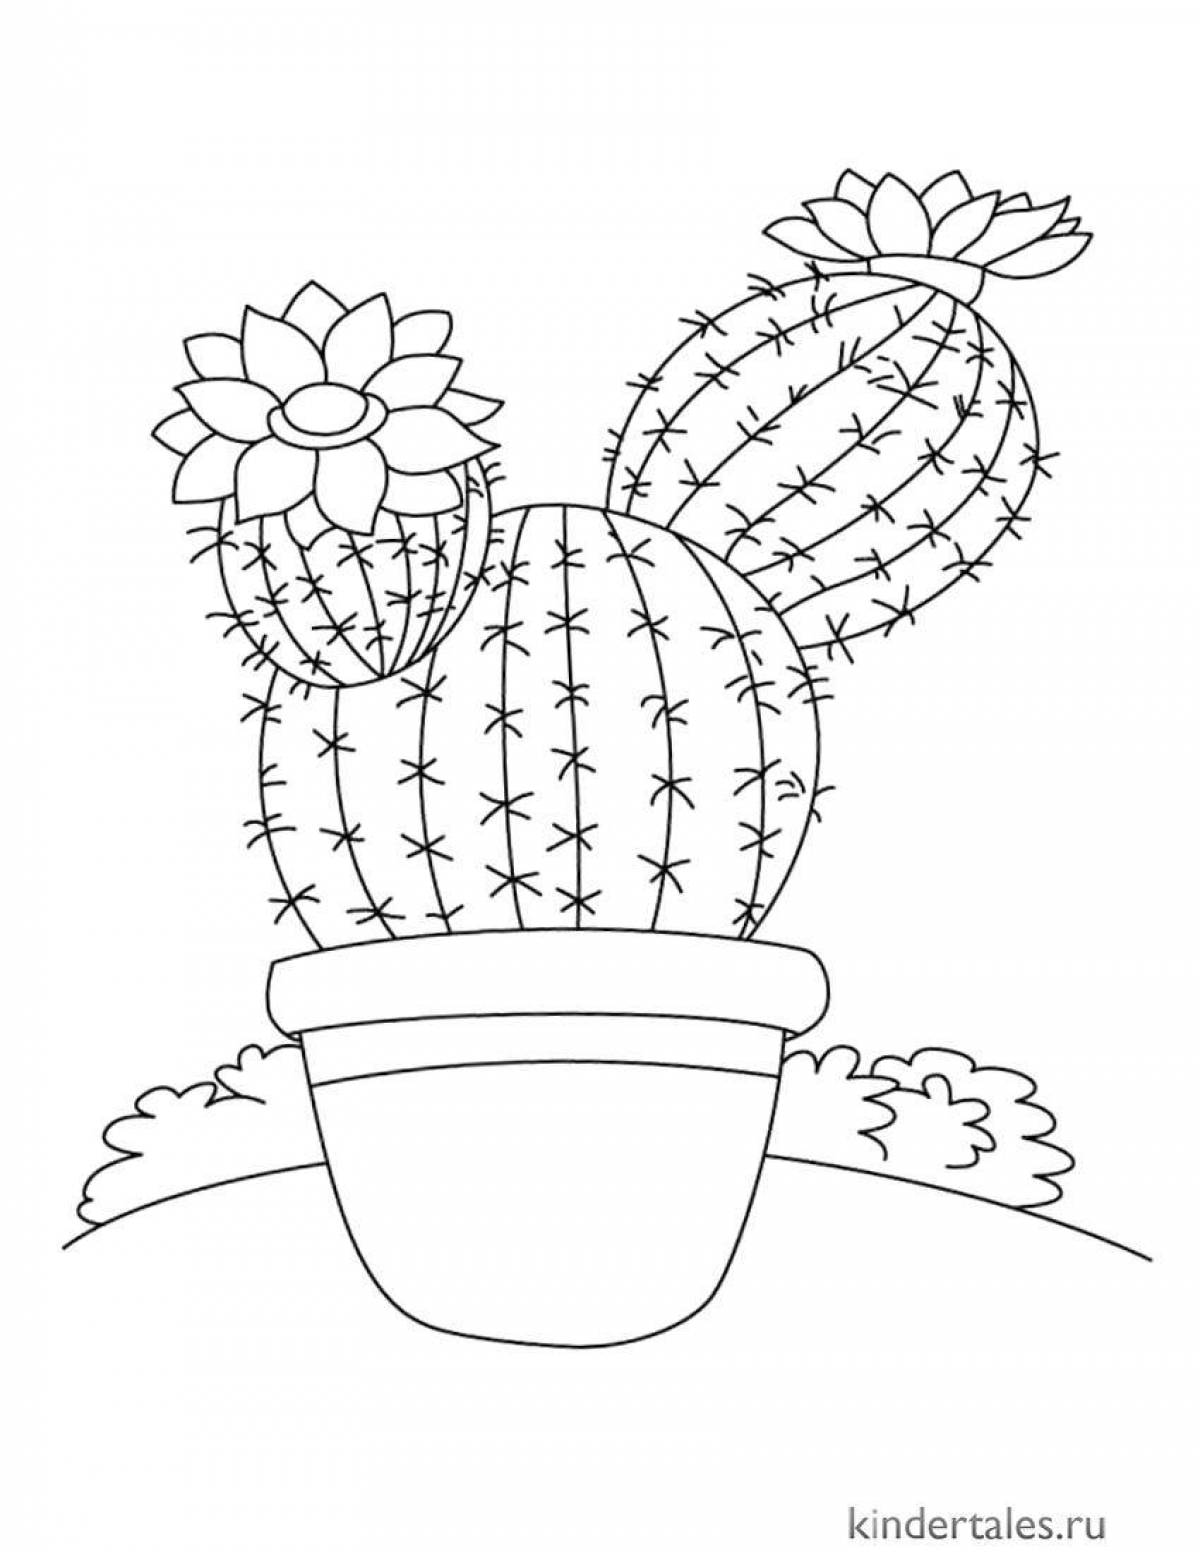 Креативная кактусовая раскраска для детей